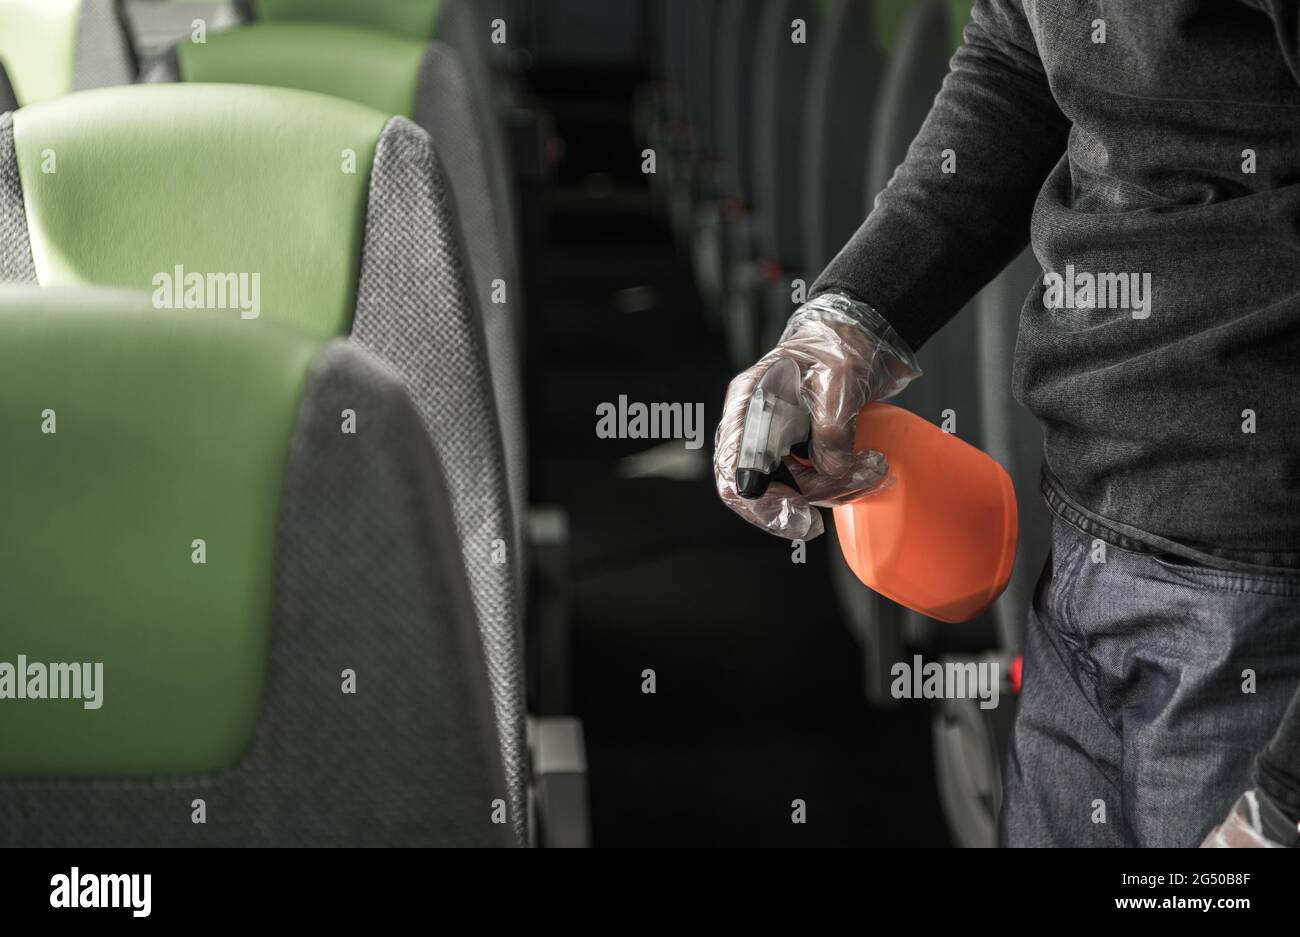 Pulendo e disinfettando i braccioli dei sedili del veicolo indossando guanti in vinile. Trasporti pubblici e tema pandemico. Foto Stock